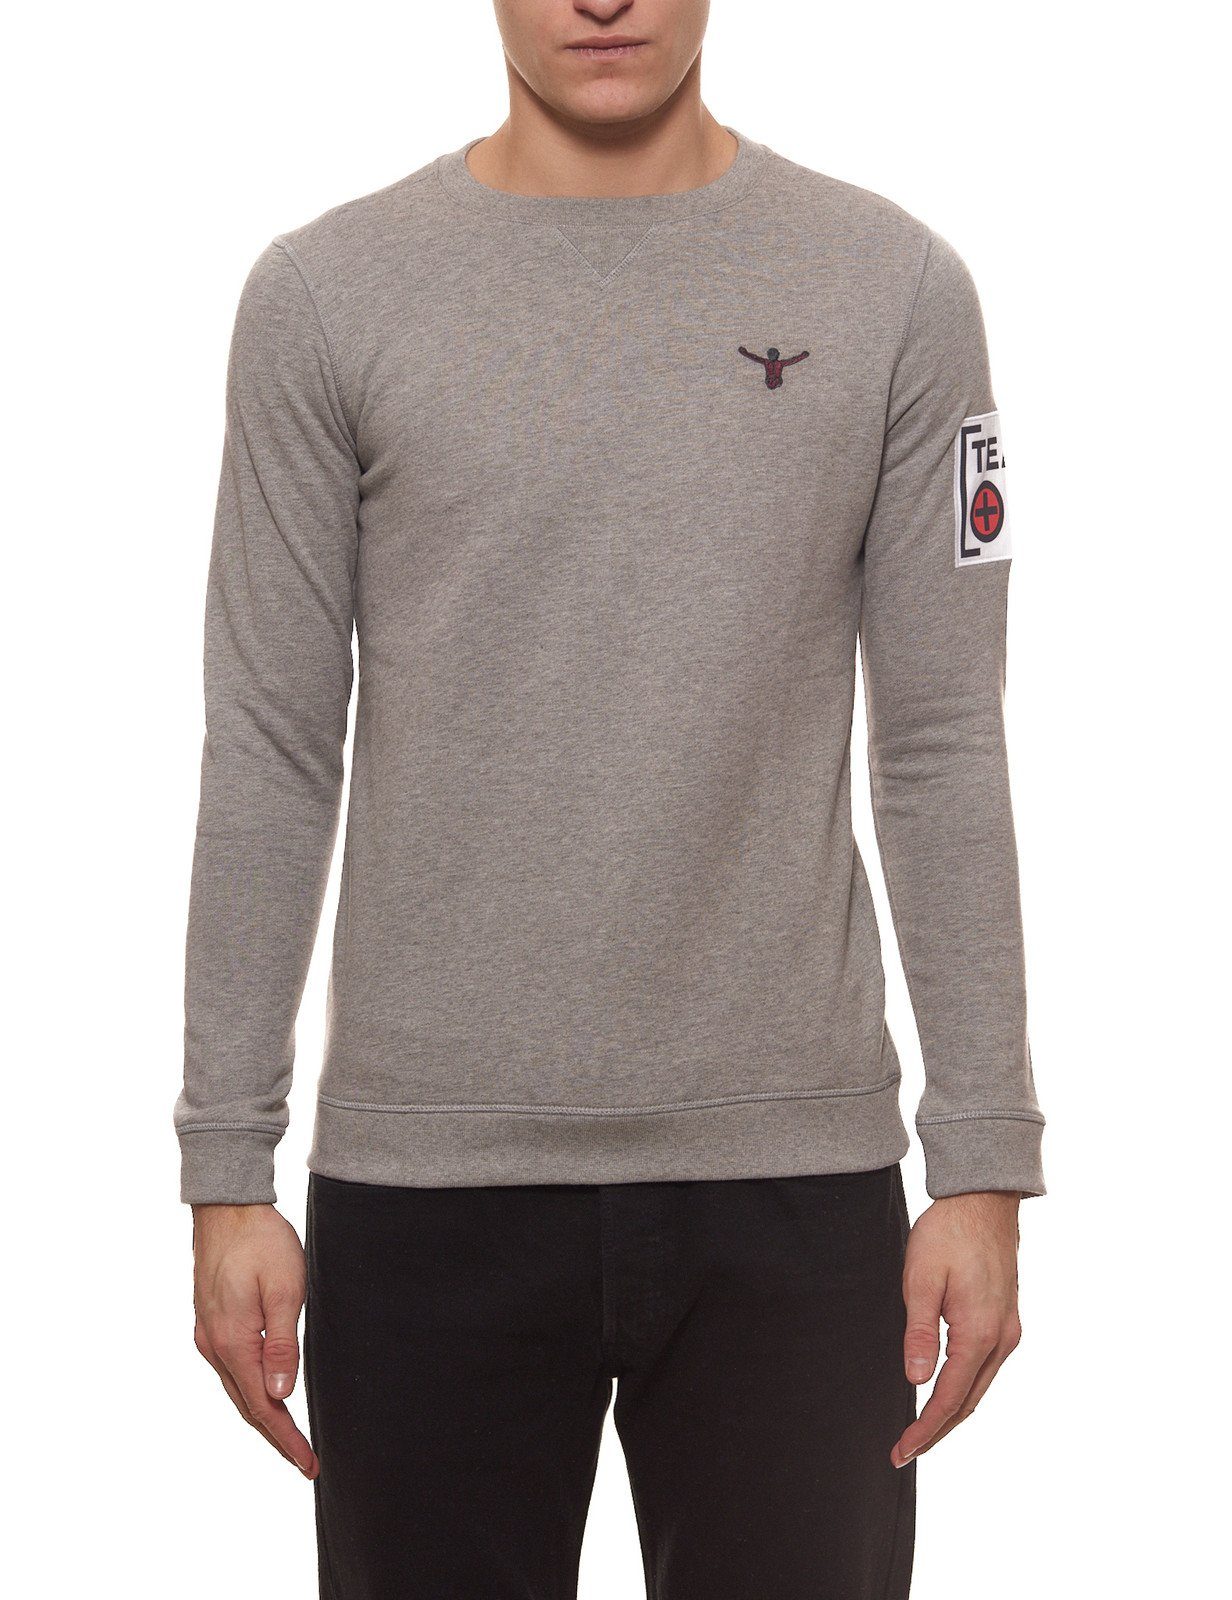 Chiemsee Rundhalspullover »CHIEMSEE Zayn Sweater angenehm zu tragender  Herren Rundhals Pullover Pulli Grau« online kaufen | OTTO